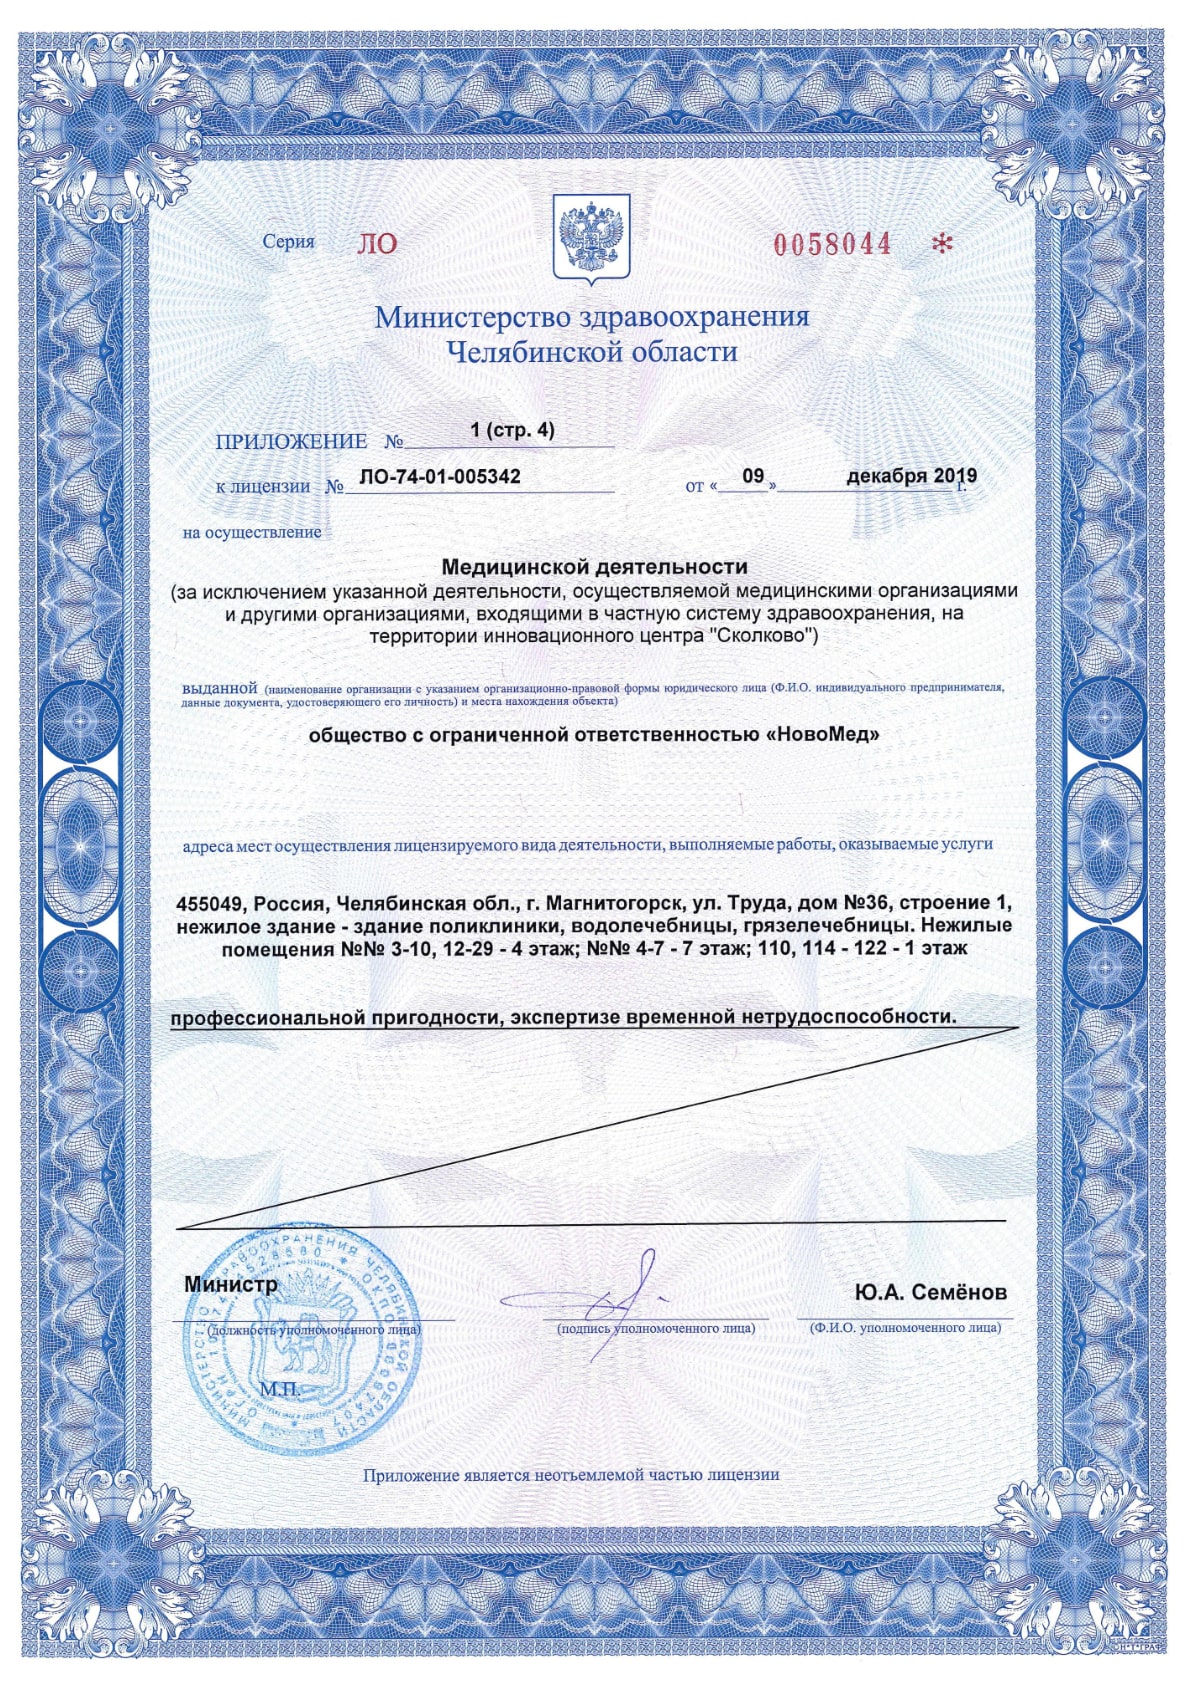 Приложение №1 к лицензии ЛО-74-01-005342, лист 4